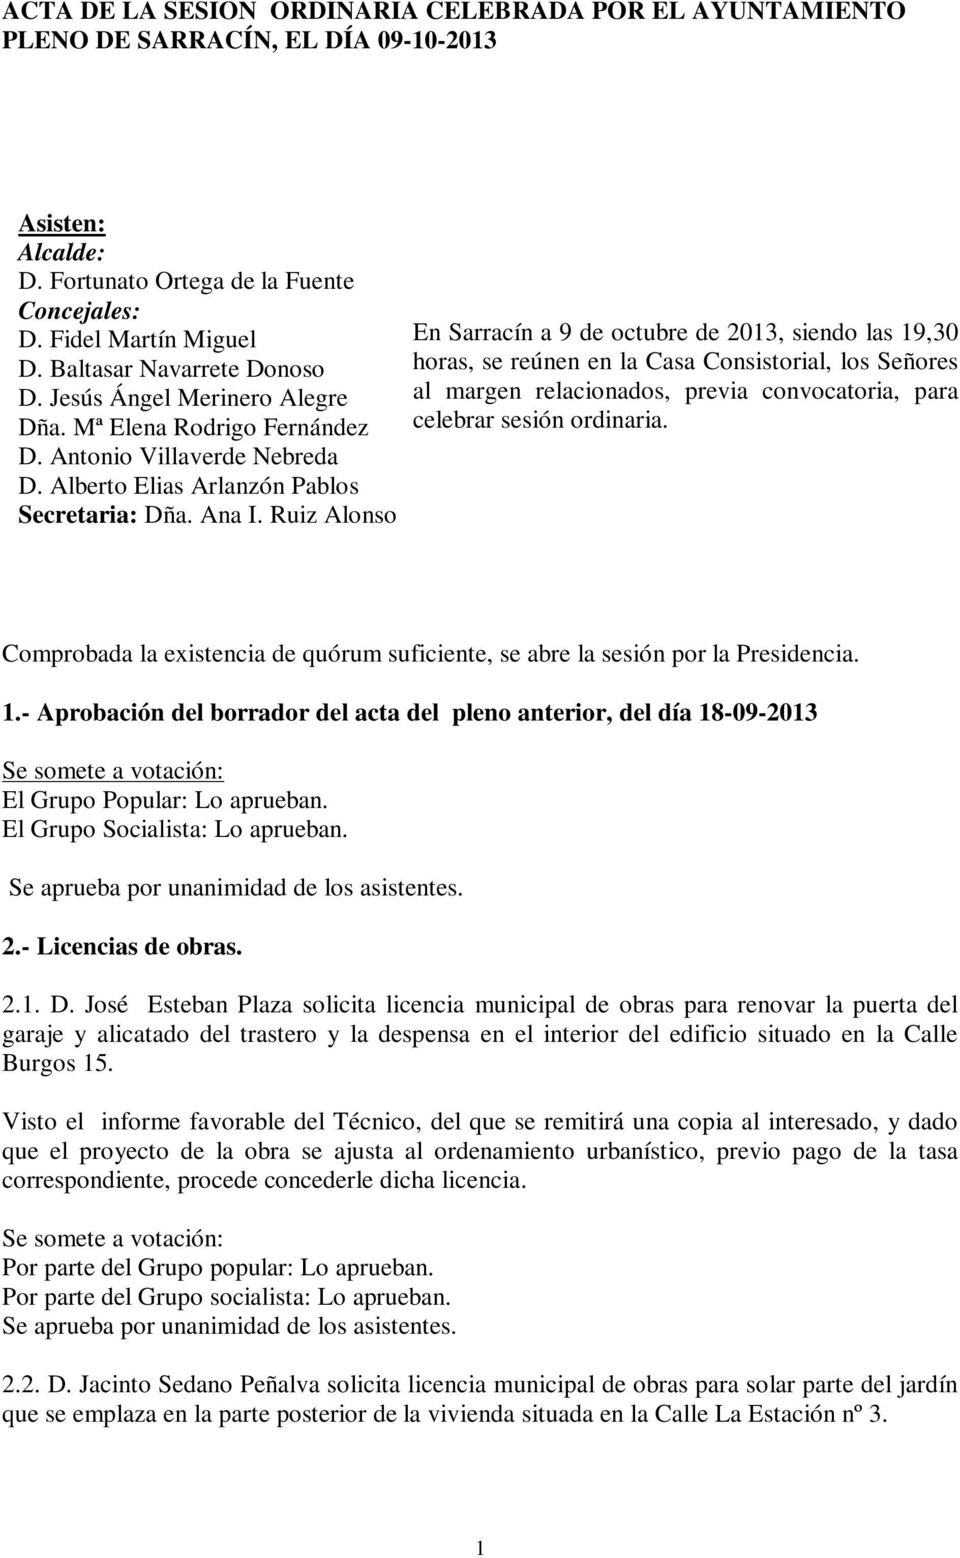 Ruiz Alonso En Sarracín a 9 de octubre de 2013, siendo las 19,30 horas, se reúnen en la Casa Consistorial, los Señores al margen relacionados, previa convocatoria, para celebrar sesión ordinaria.